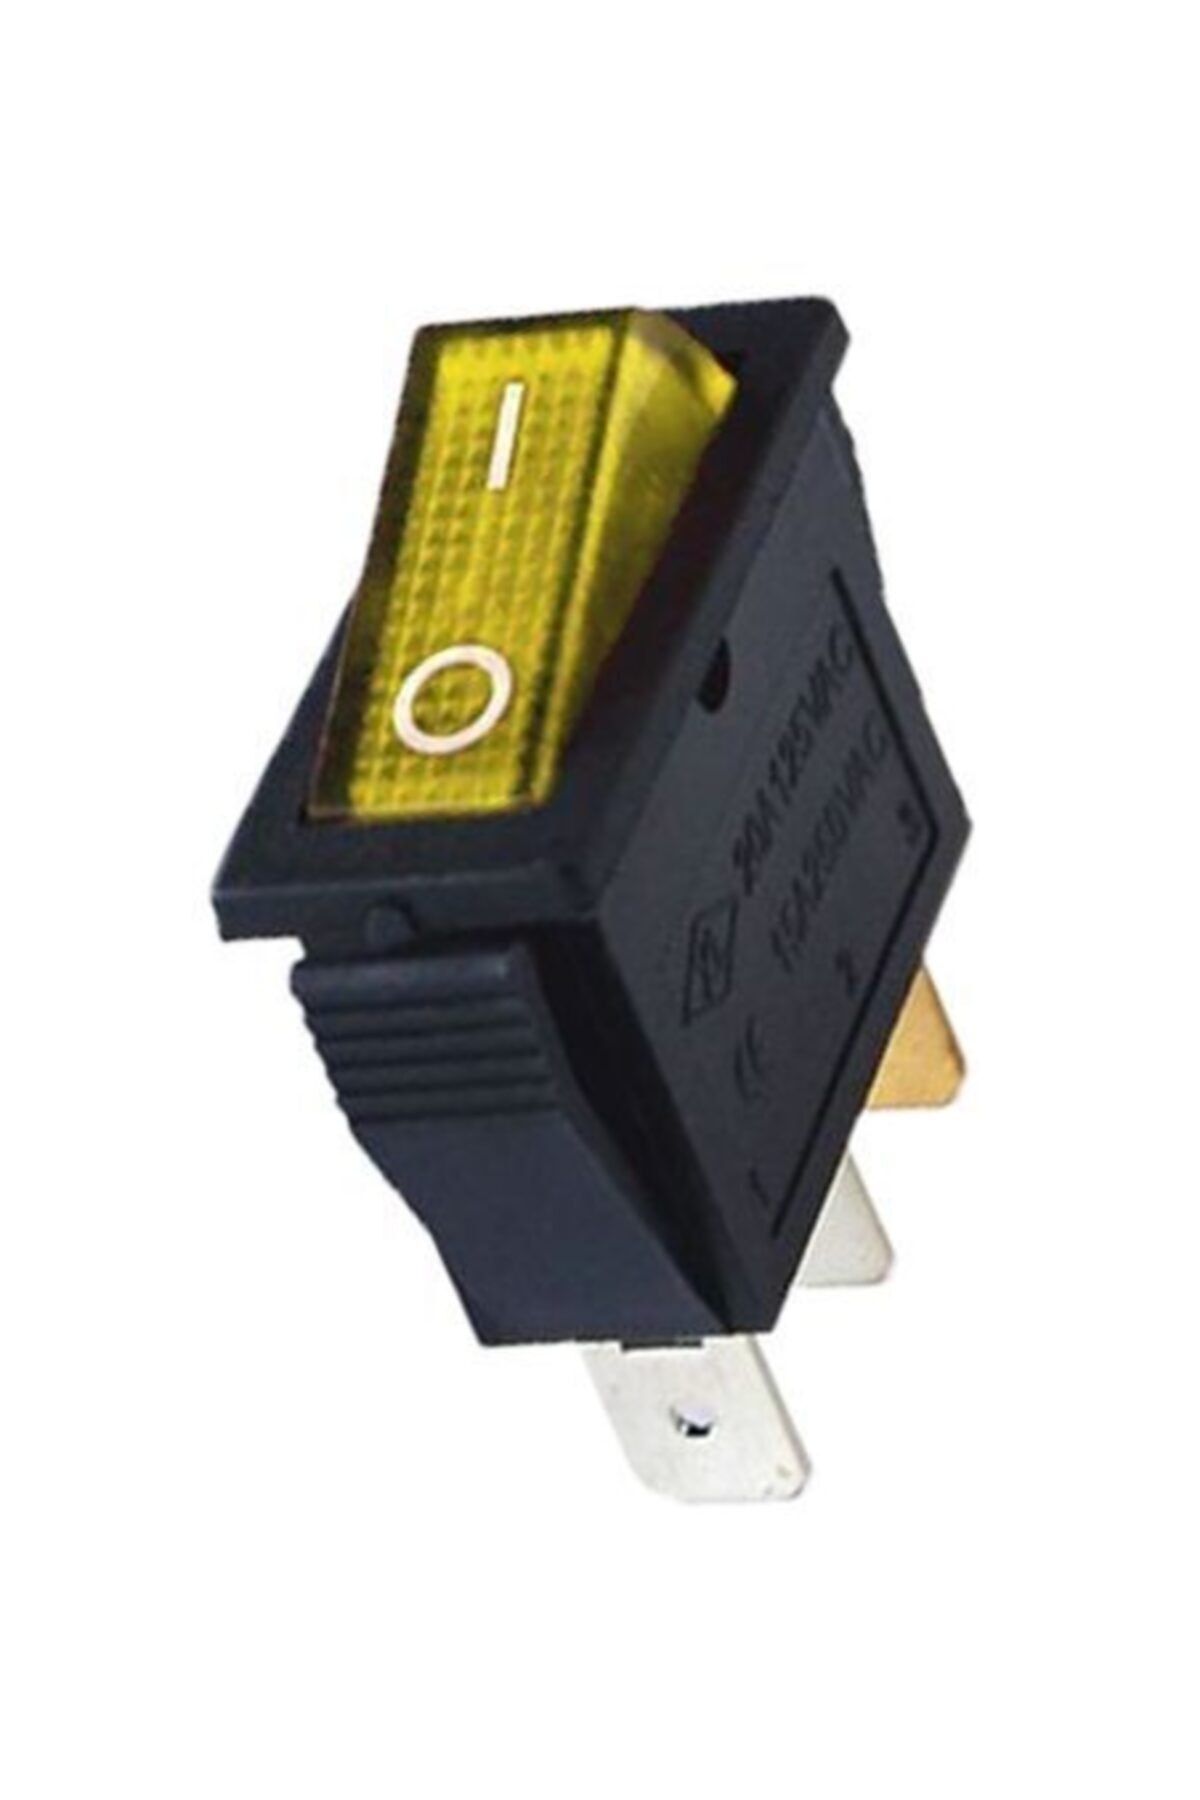 Site Hırdavat Ic-113 Sarı Dar Işıklı Anahtar On/off Switch 3p